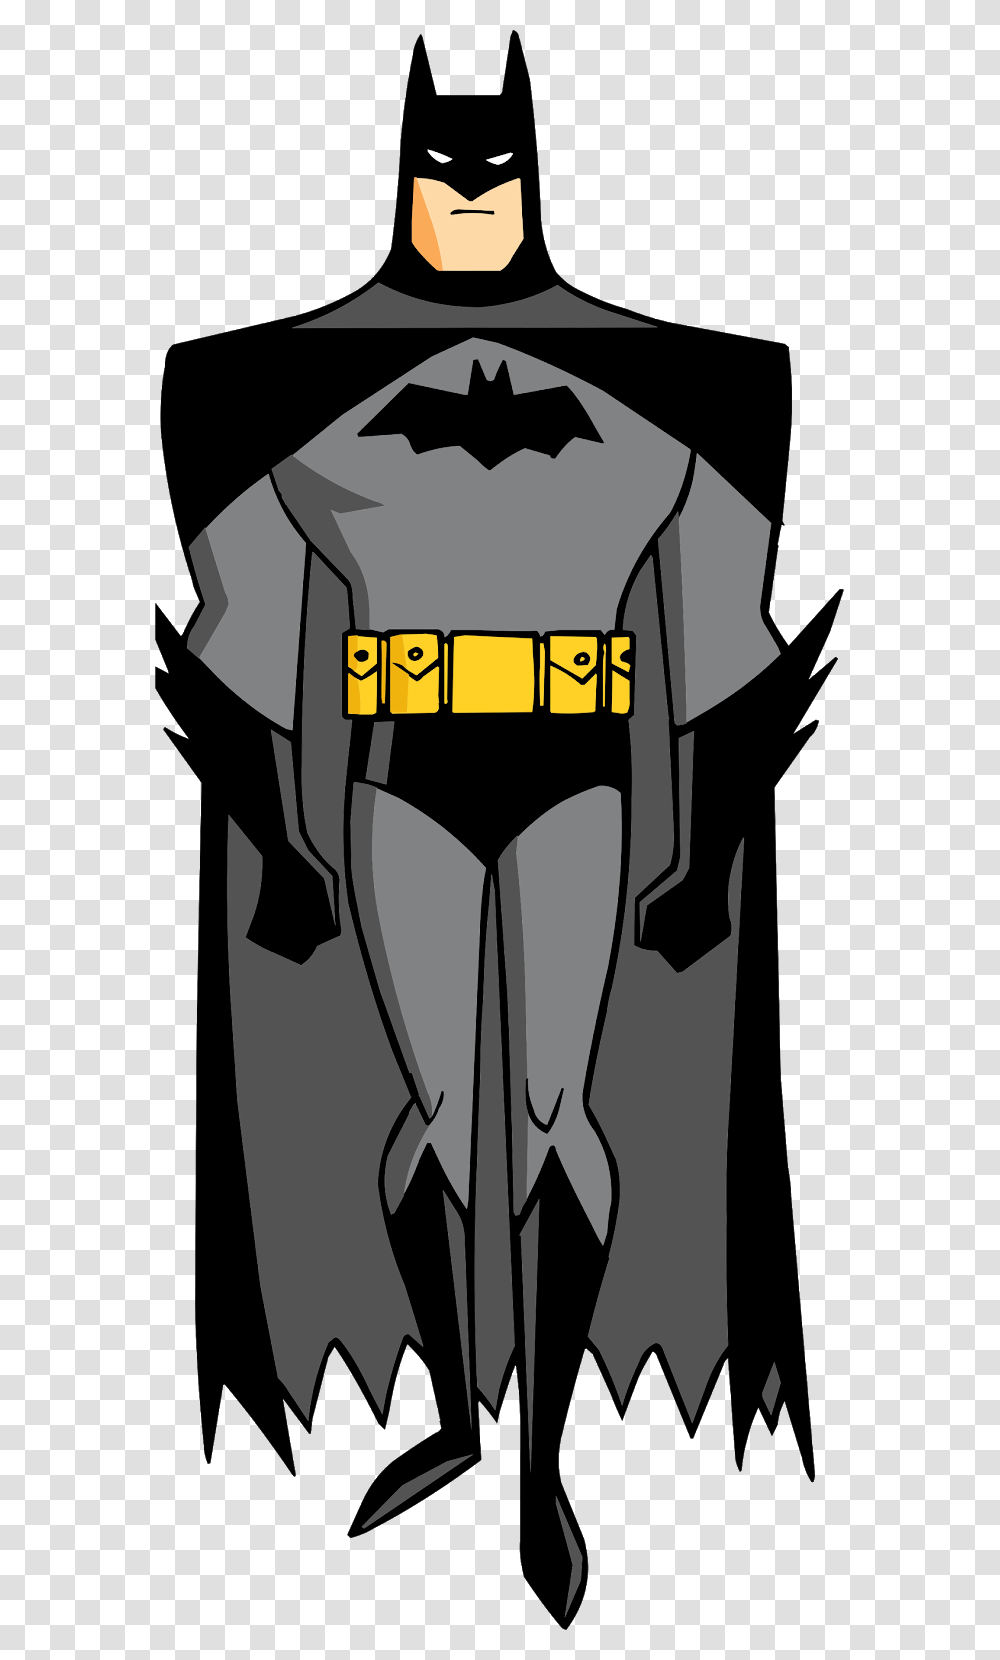 Batman Characters Batman Cartoon Characters Batman, Tie, Accessories, Plot Transparent Png